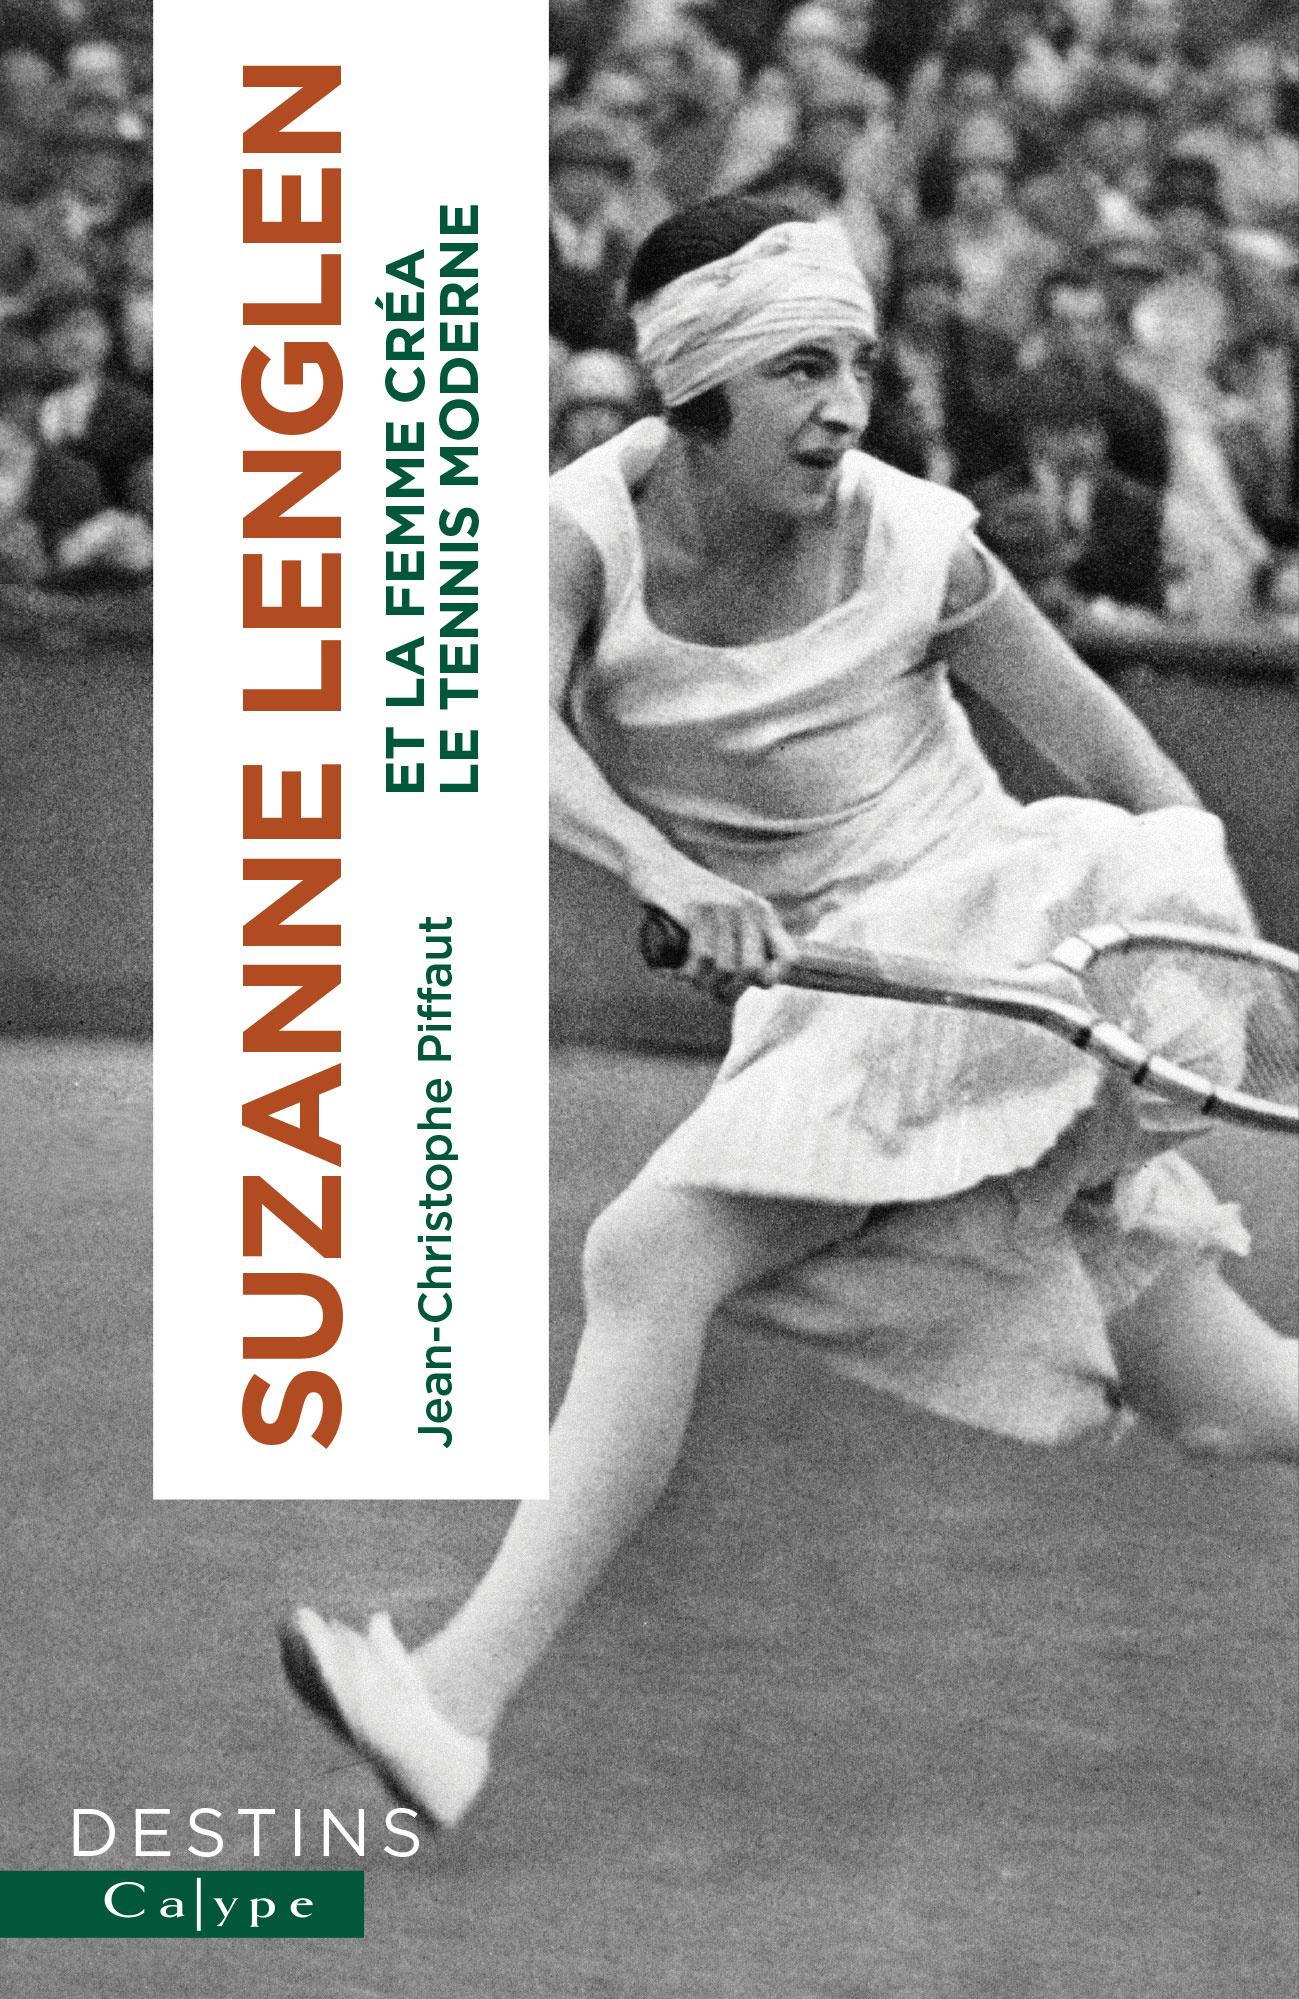 Suzanne Lenglen, Et la femme créa le tennis moderne